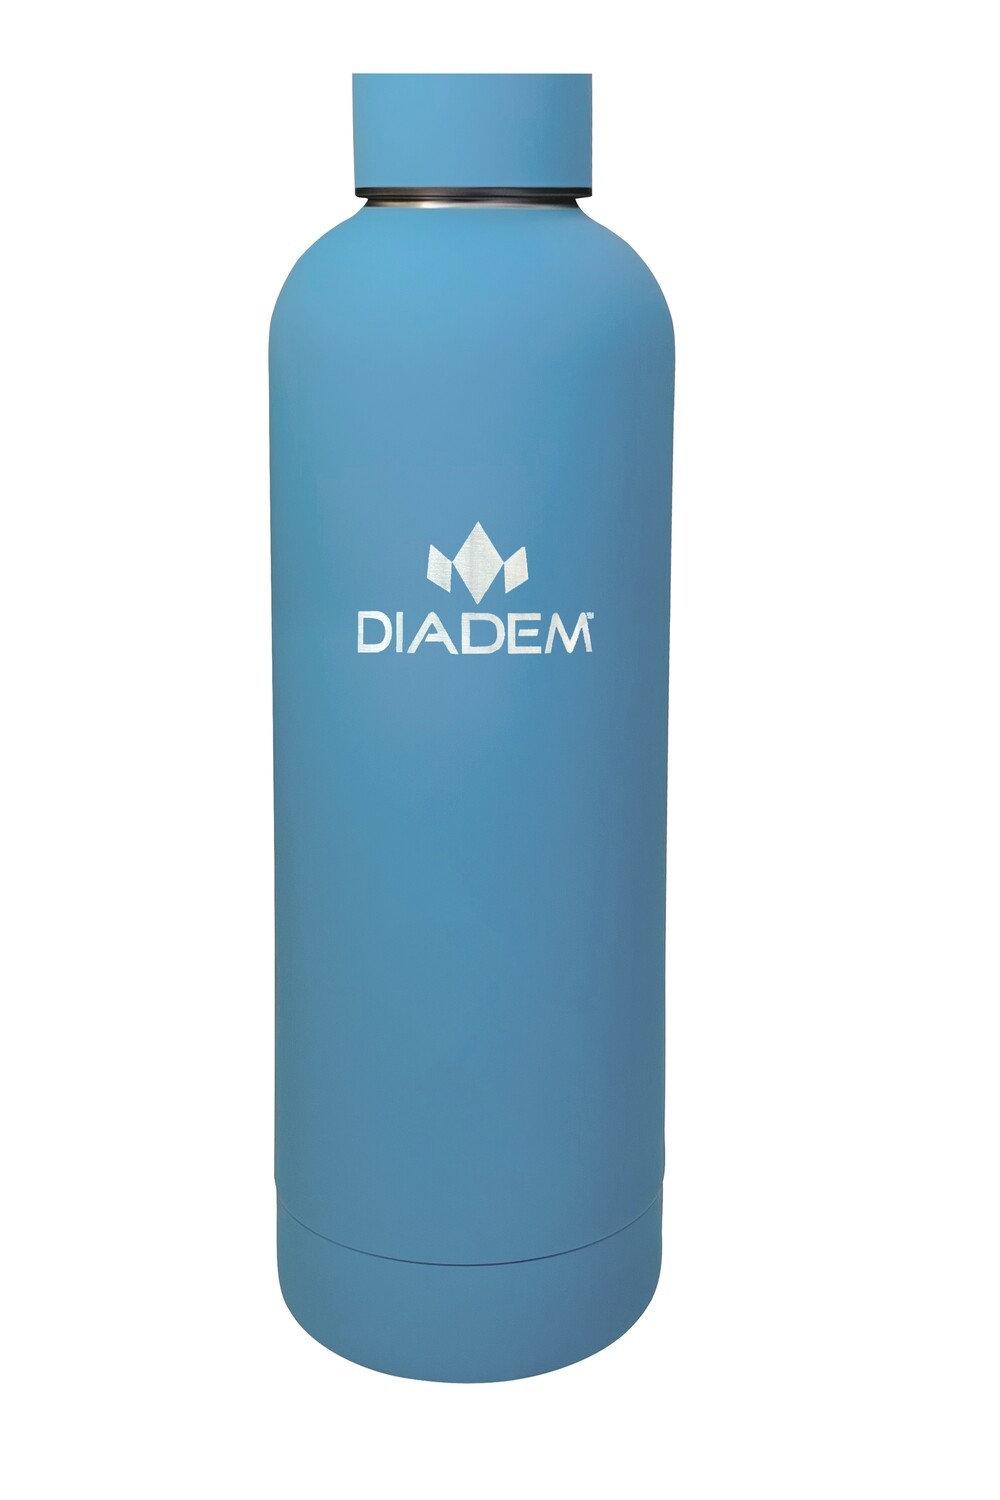 Diadem Ocean Bottle 750ml - Stainless Steel